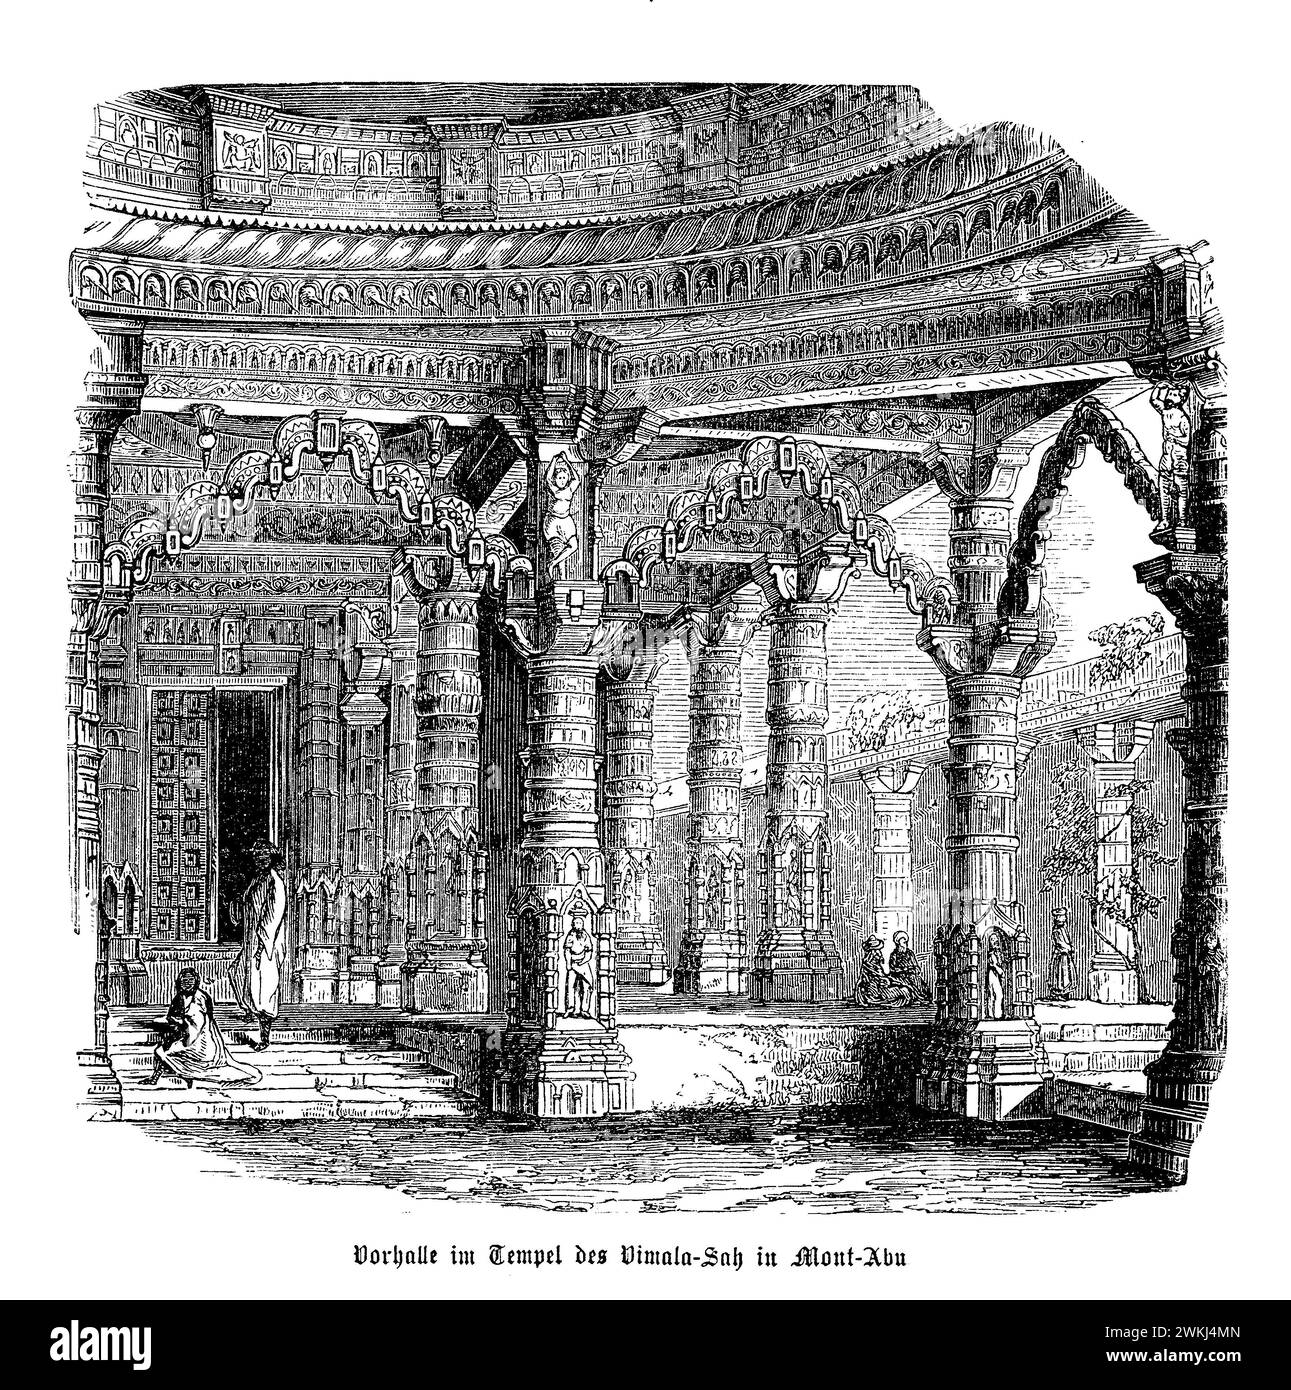 Le hall d'entrée du temple Vimala Vasahi au mont Abu est un exemple époustouflant de l'éclat architectural jaïn. Construit au XIe siècle, le hall de ce temple (ou mandapa) accueille les visiteurs avec ses sculptures ornées et ses sculptures détaillées qui célèbrent la vie et les enseignements d'Adinatha, le premier Jain Tirthankara. La salle est ornée de panneaux représentant des scènes des Écritures jaïnes, entourées d'une série de piliers magnifiquement sculptés qui soutiennent la structure. L'artisanat méticuleux met en valeur le dévouement des artisans à leurs croyances spirituelles Banque D'Images